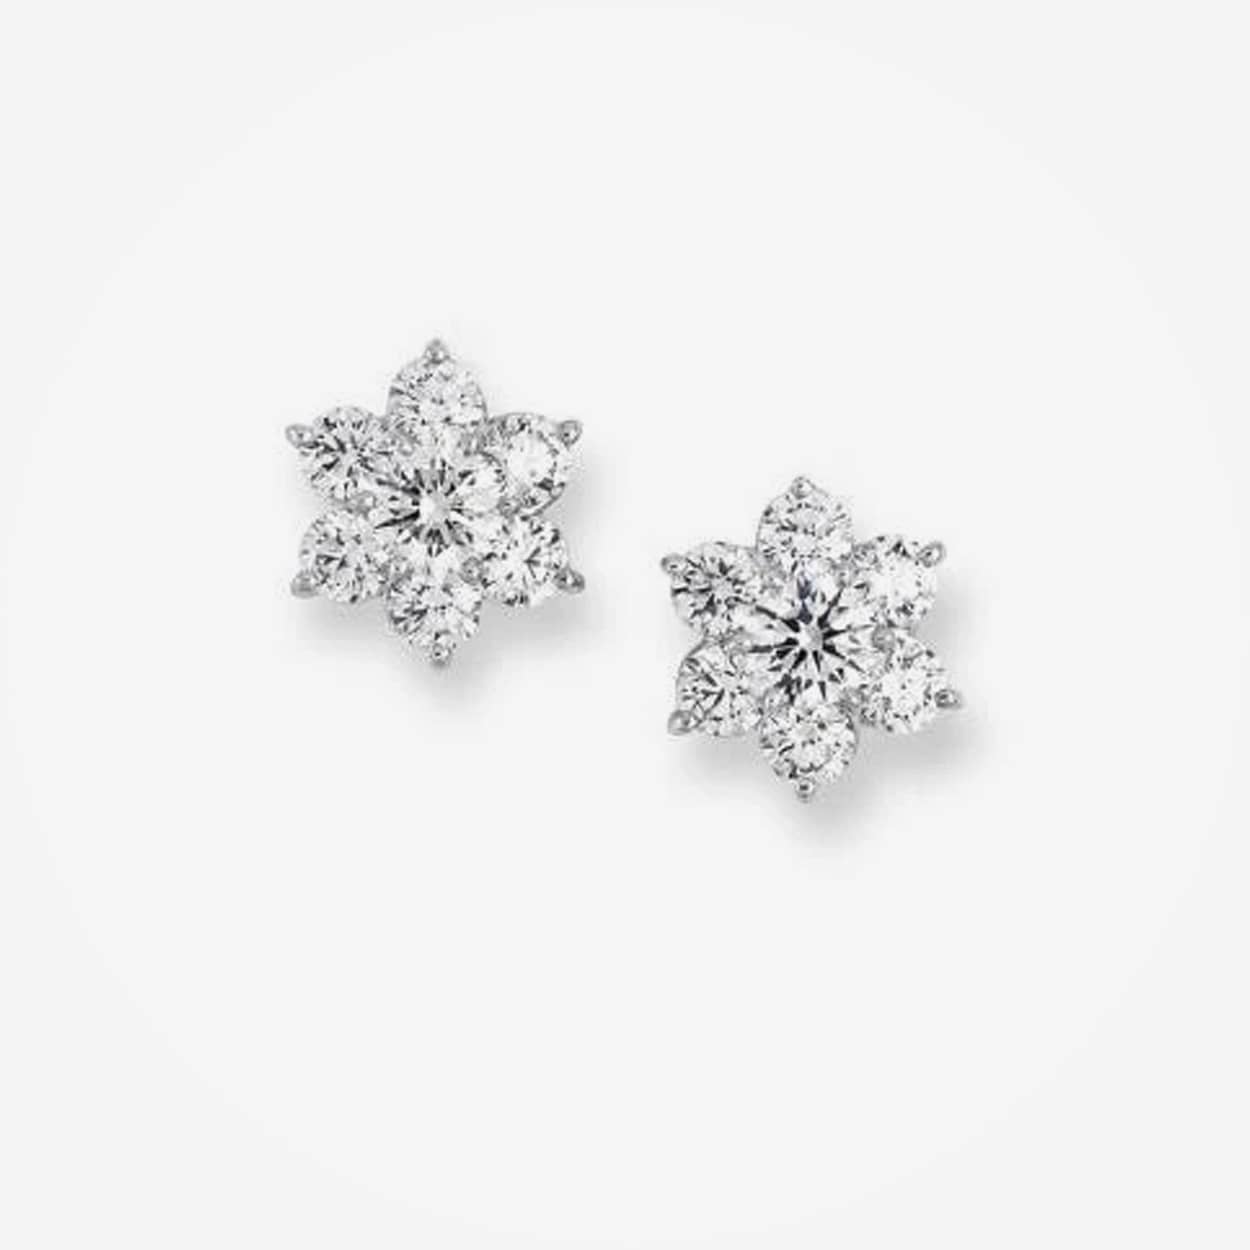 1.92 Carat Round Diamond Flower Earrings White Gold 